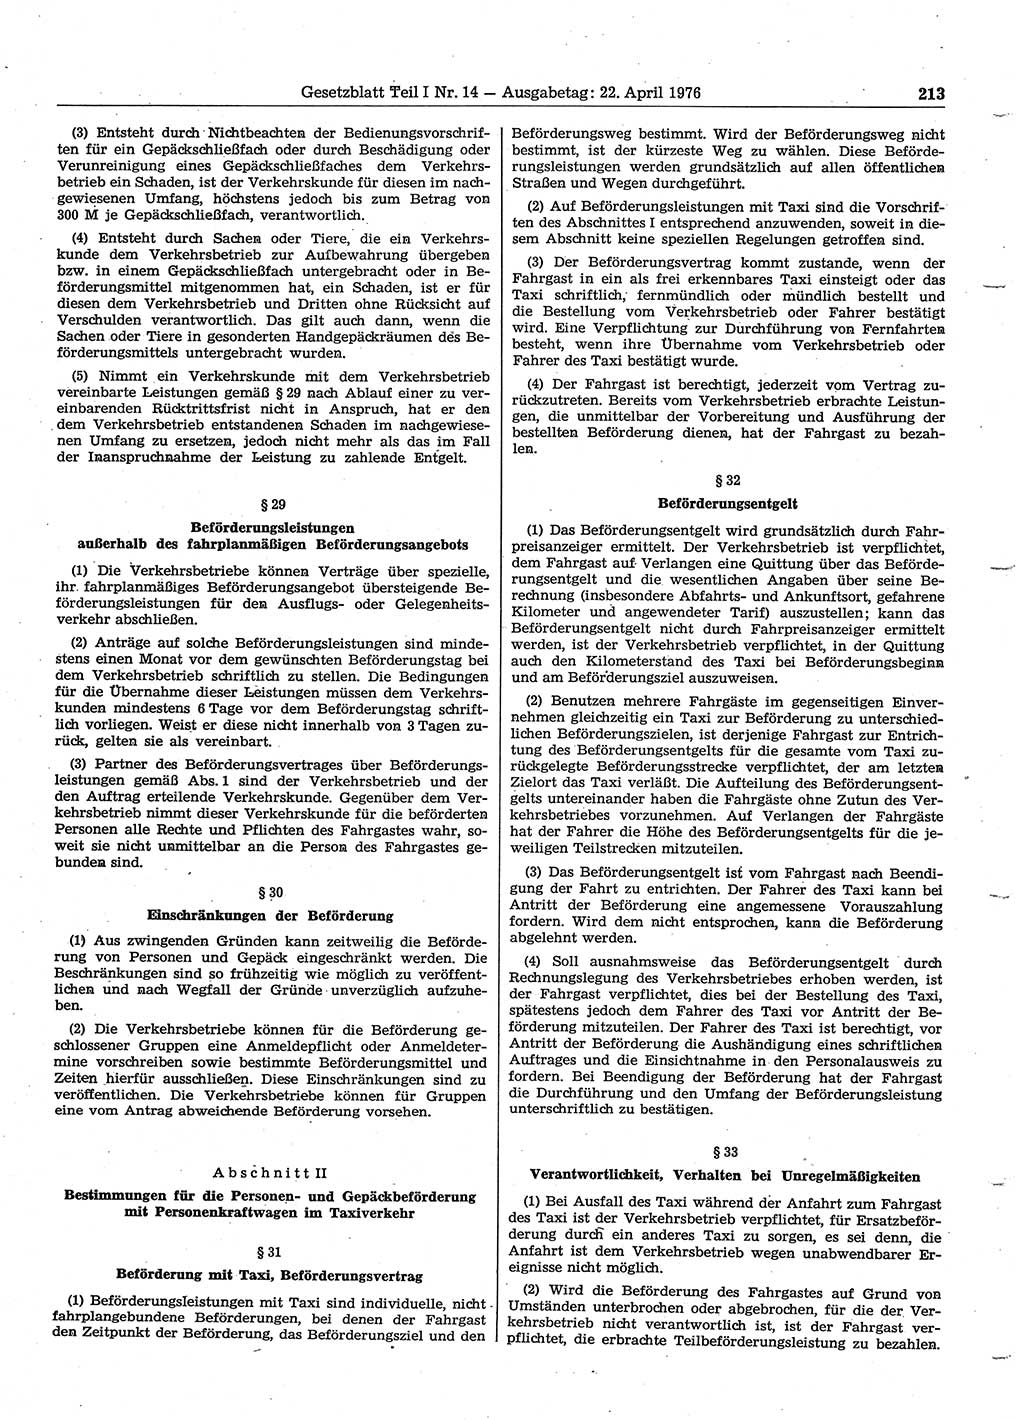 Gesetzblatt (GBl.) der Deutschen Demokratischen Republik (DDR) Teil Ⅰ 1976, Seite 213 (GBl. DDR Ⅰ 1976, S. 213)